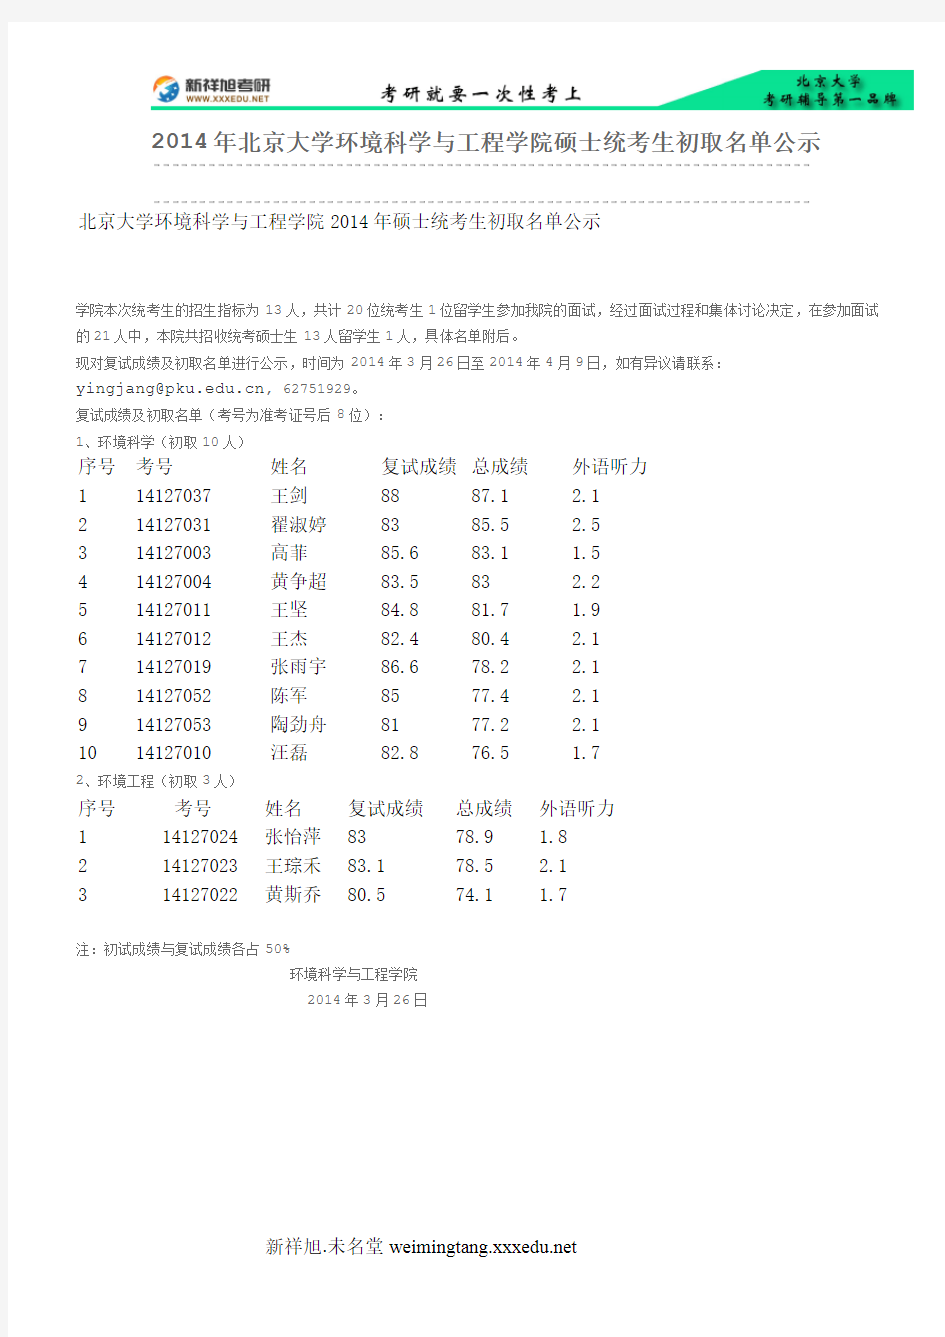 2014年北京大学环境科学与工程学院硕士统考生初取名单公示